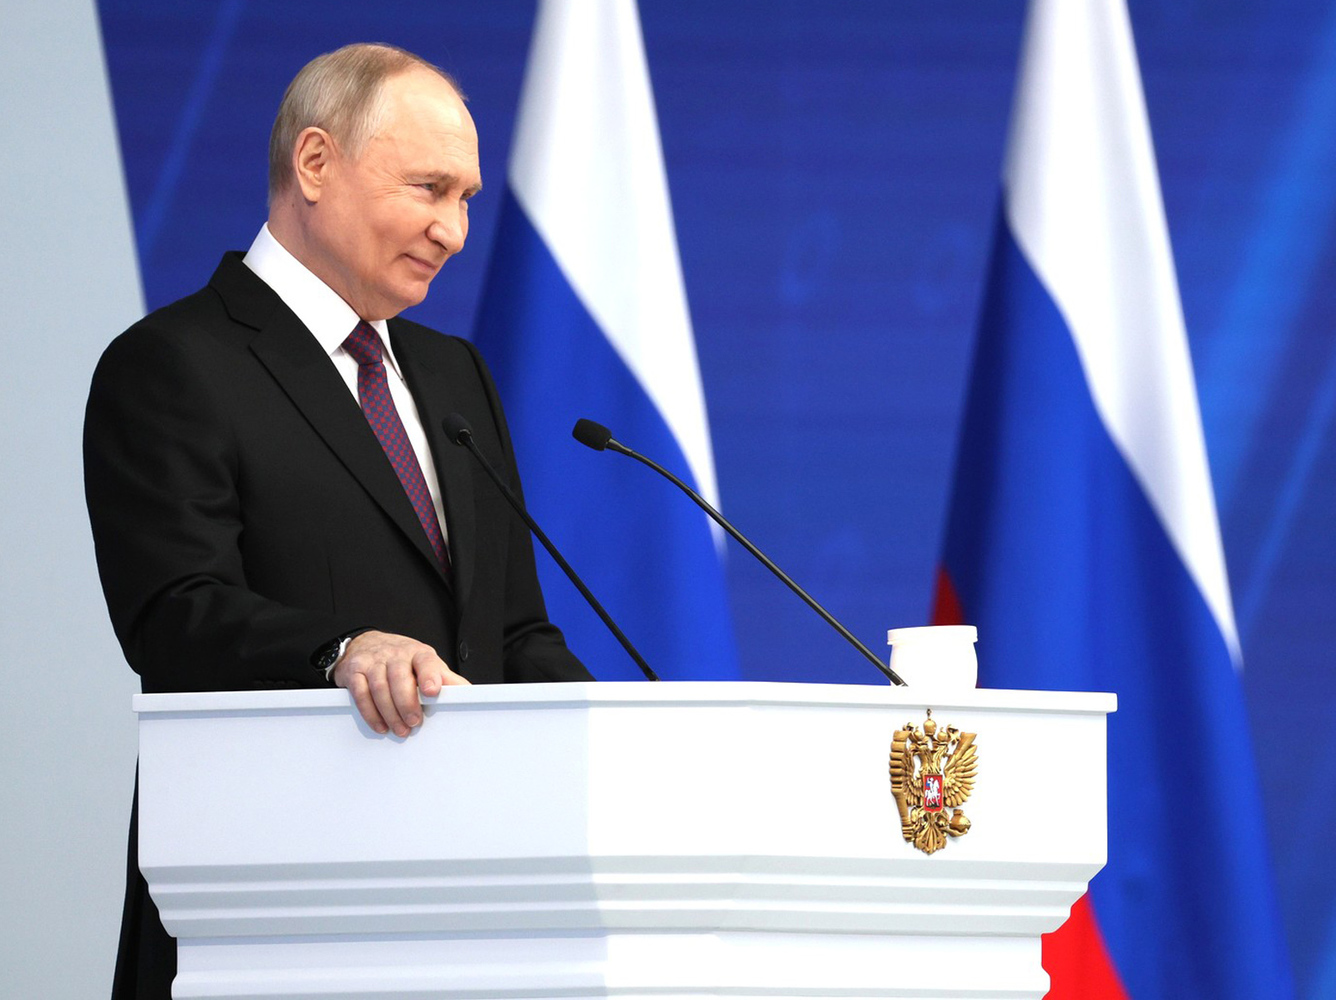 Стильные образы президента Путина: красный галстук для Лукашенко, черный - для Буша